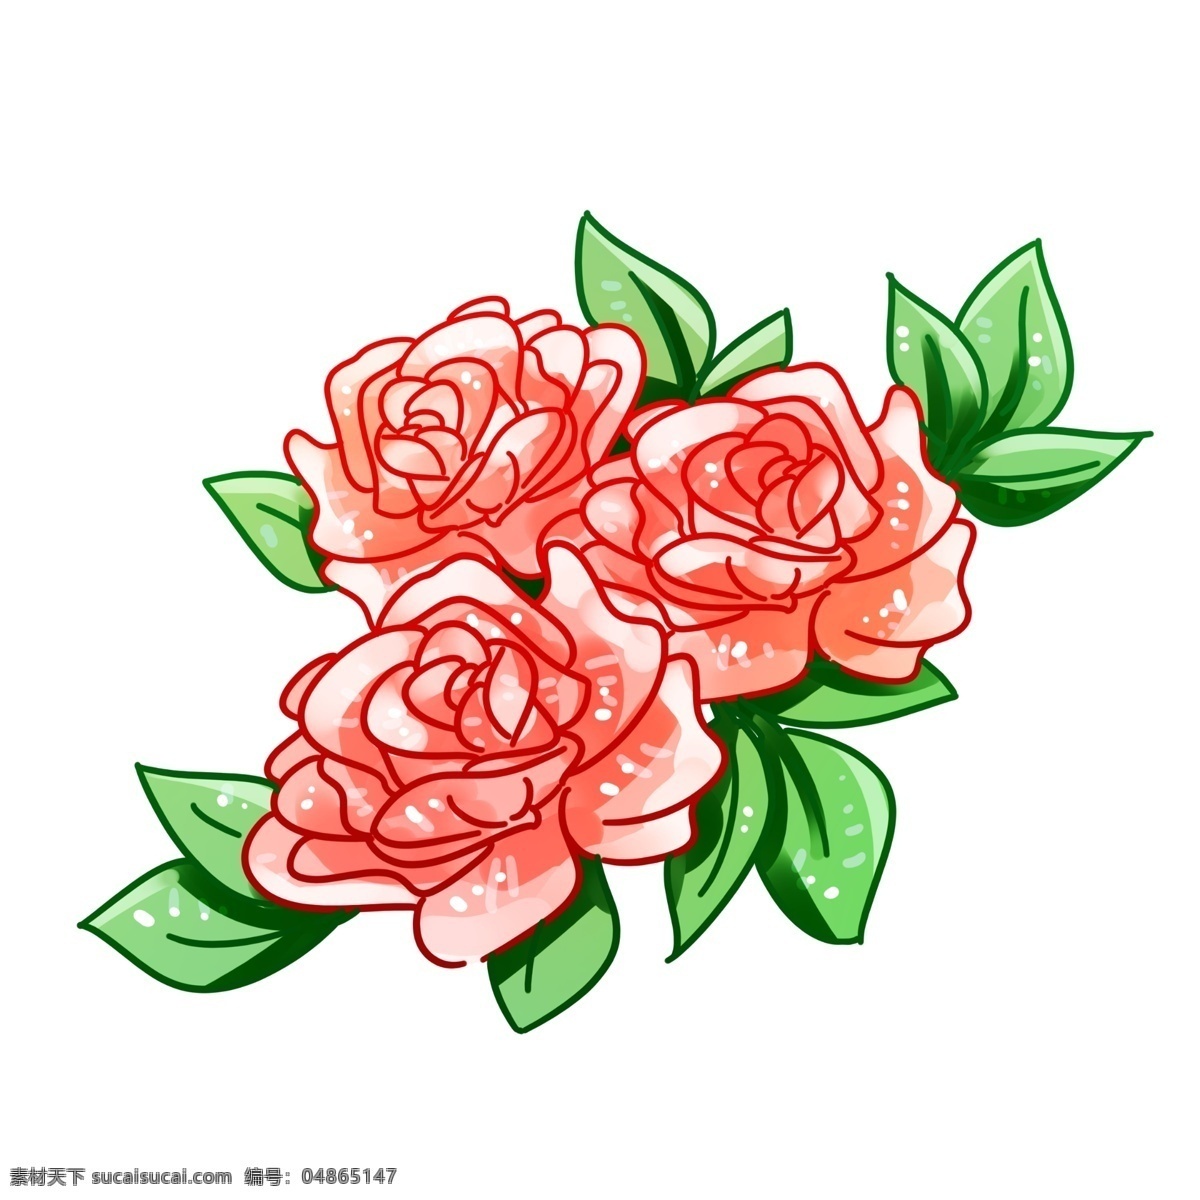 三 朵 粉色 玫瑰花 元素 商用 粉玫瑰 三朵